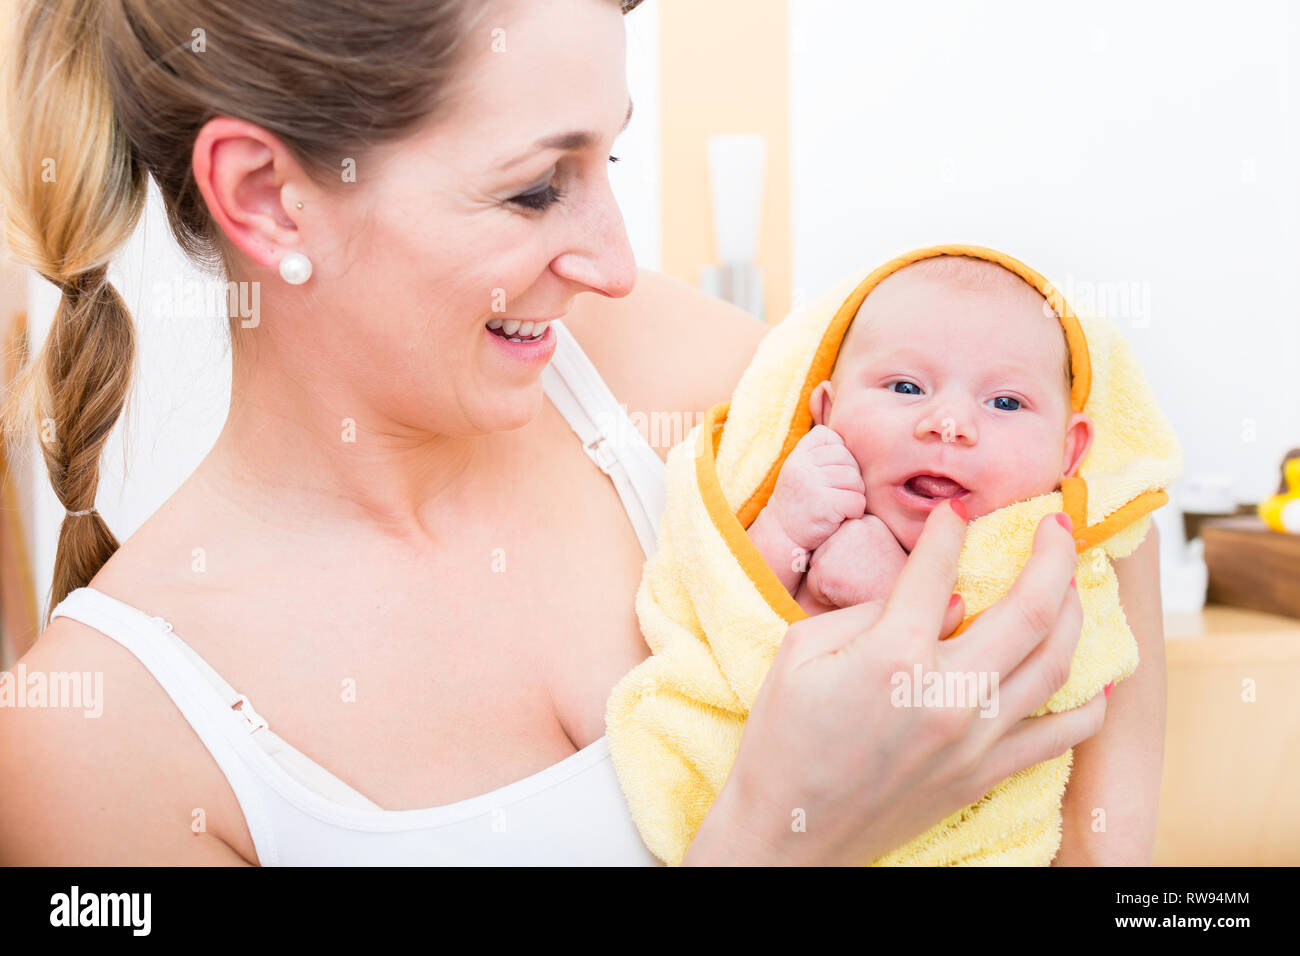 Sorridente madre che porta il suo bambino avvolto in asciugamano Foto Stock